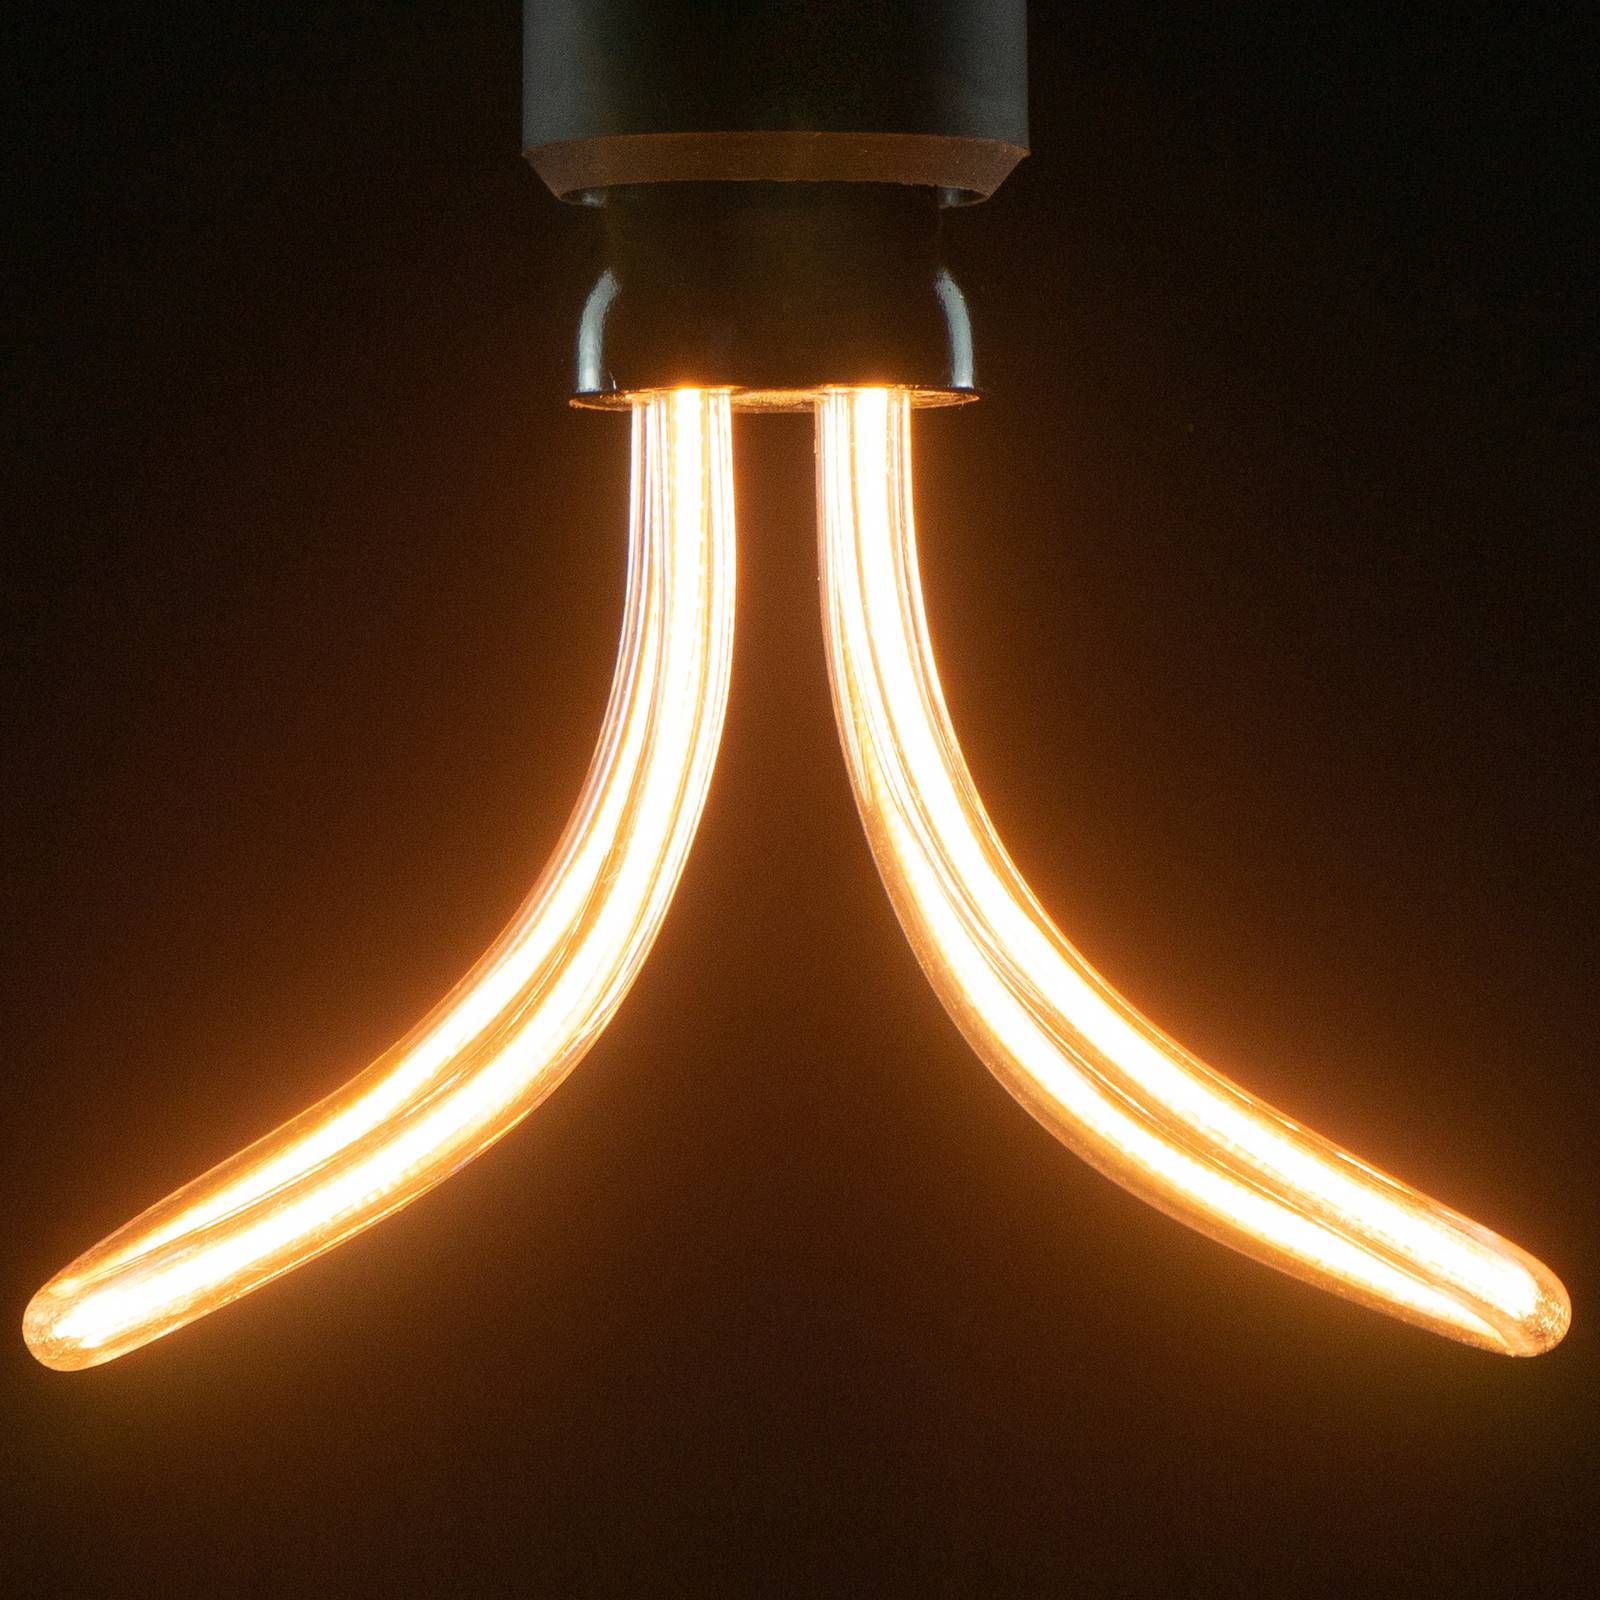 Segula SEGULA LED žiarovka Butterfly E27 10W 1900K, polykarbonát, E27, 10W, P: 14 cm